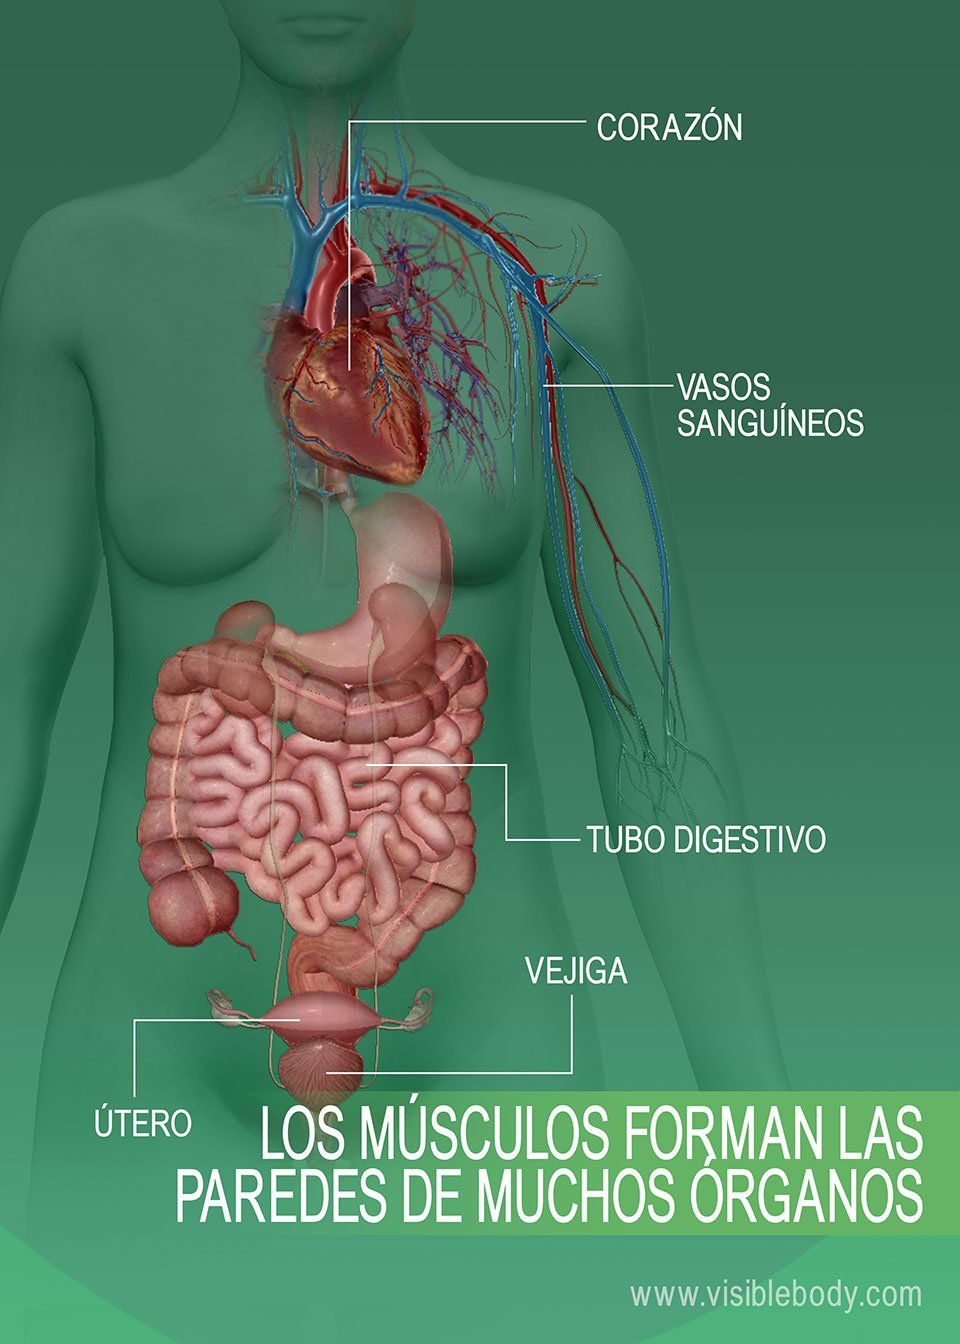 6C-Las paredes de muchos órganos están formadas por músculos